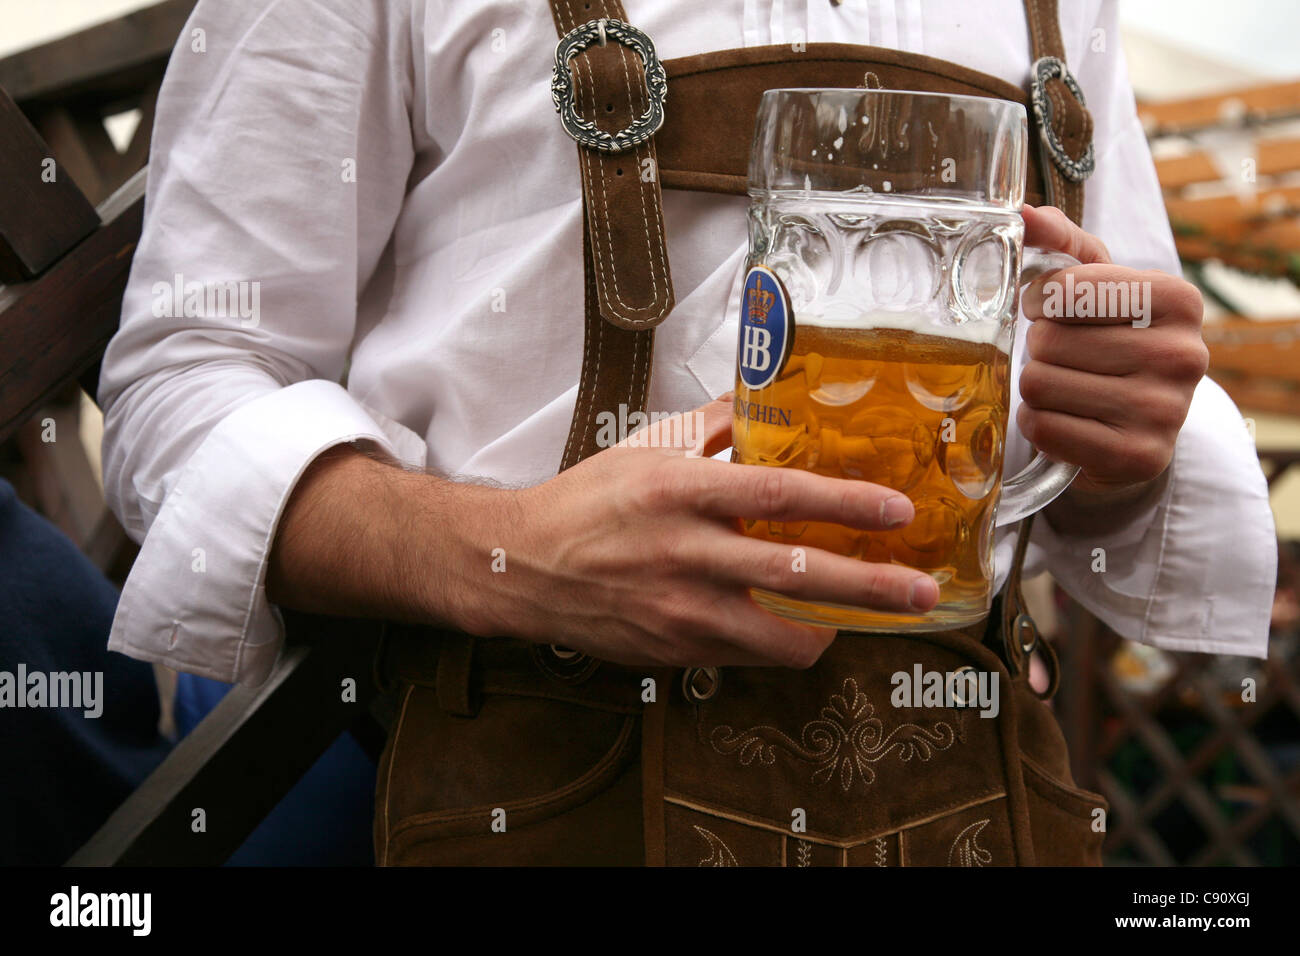 Traditionelle einen Liter Bier Masse auf das Oktoberfest in München  Stockfotografie - Alamy